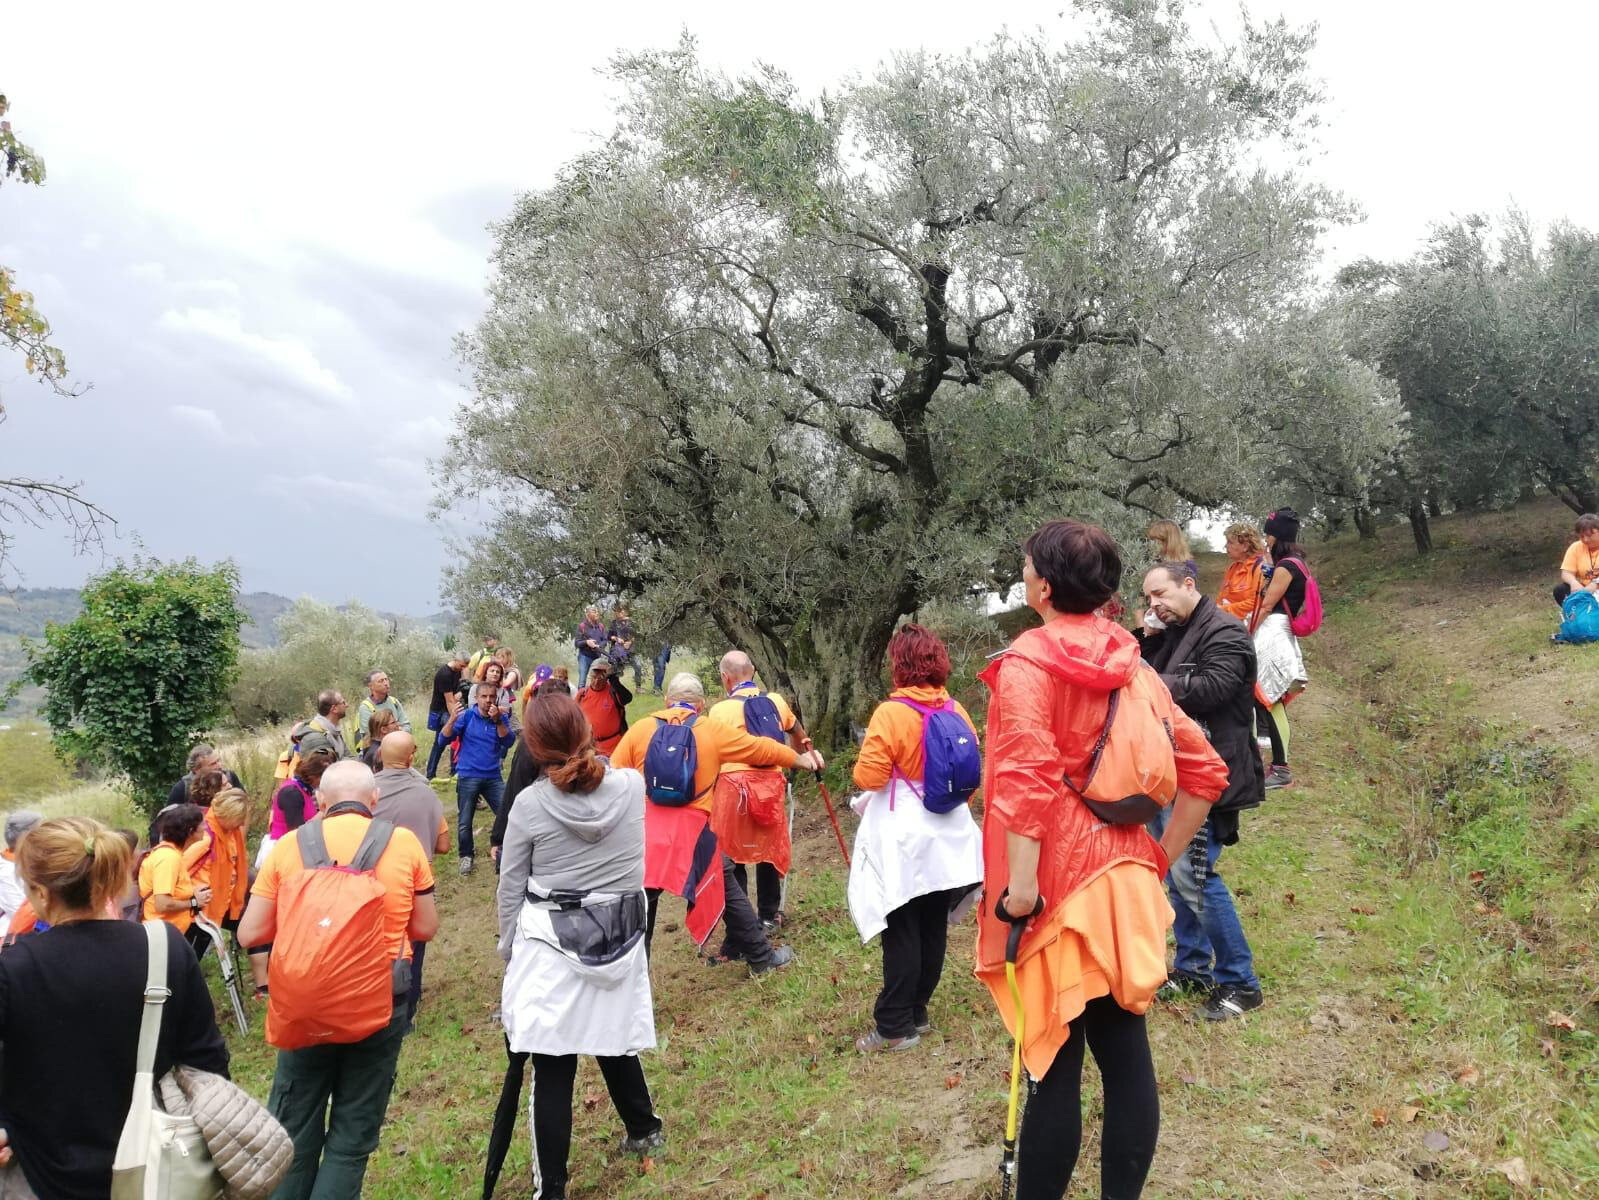 Camminata tra gli olivi nelle terre di Campania